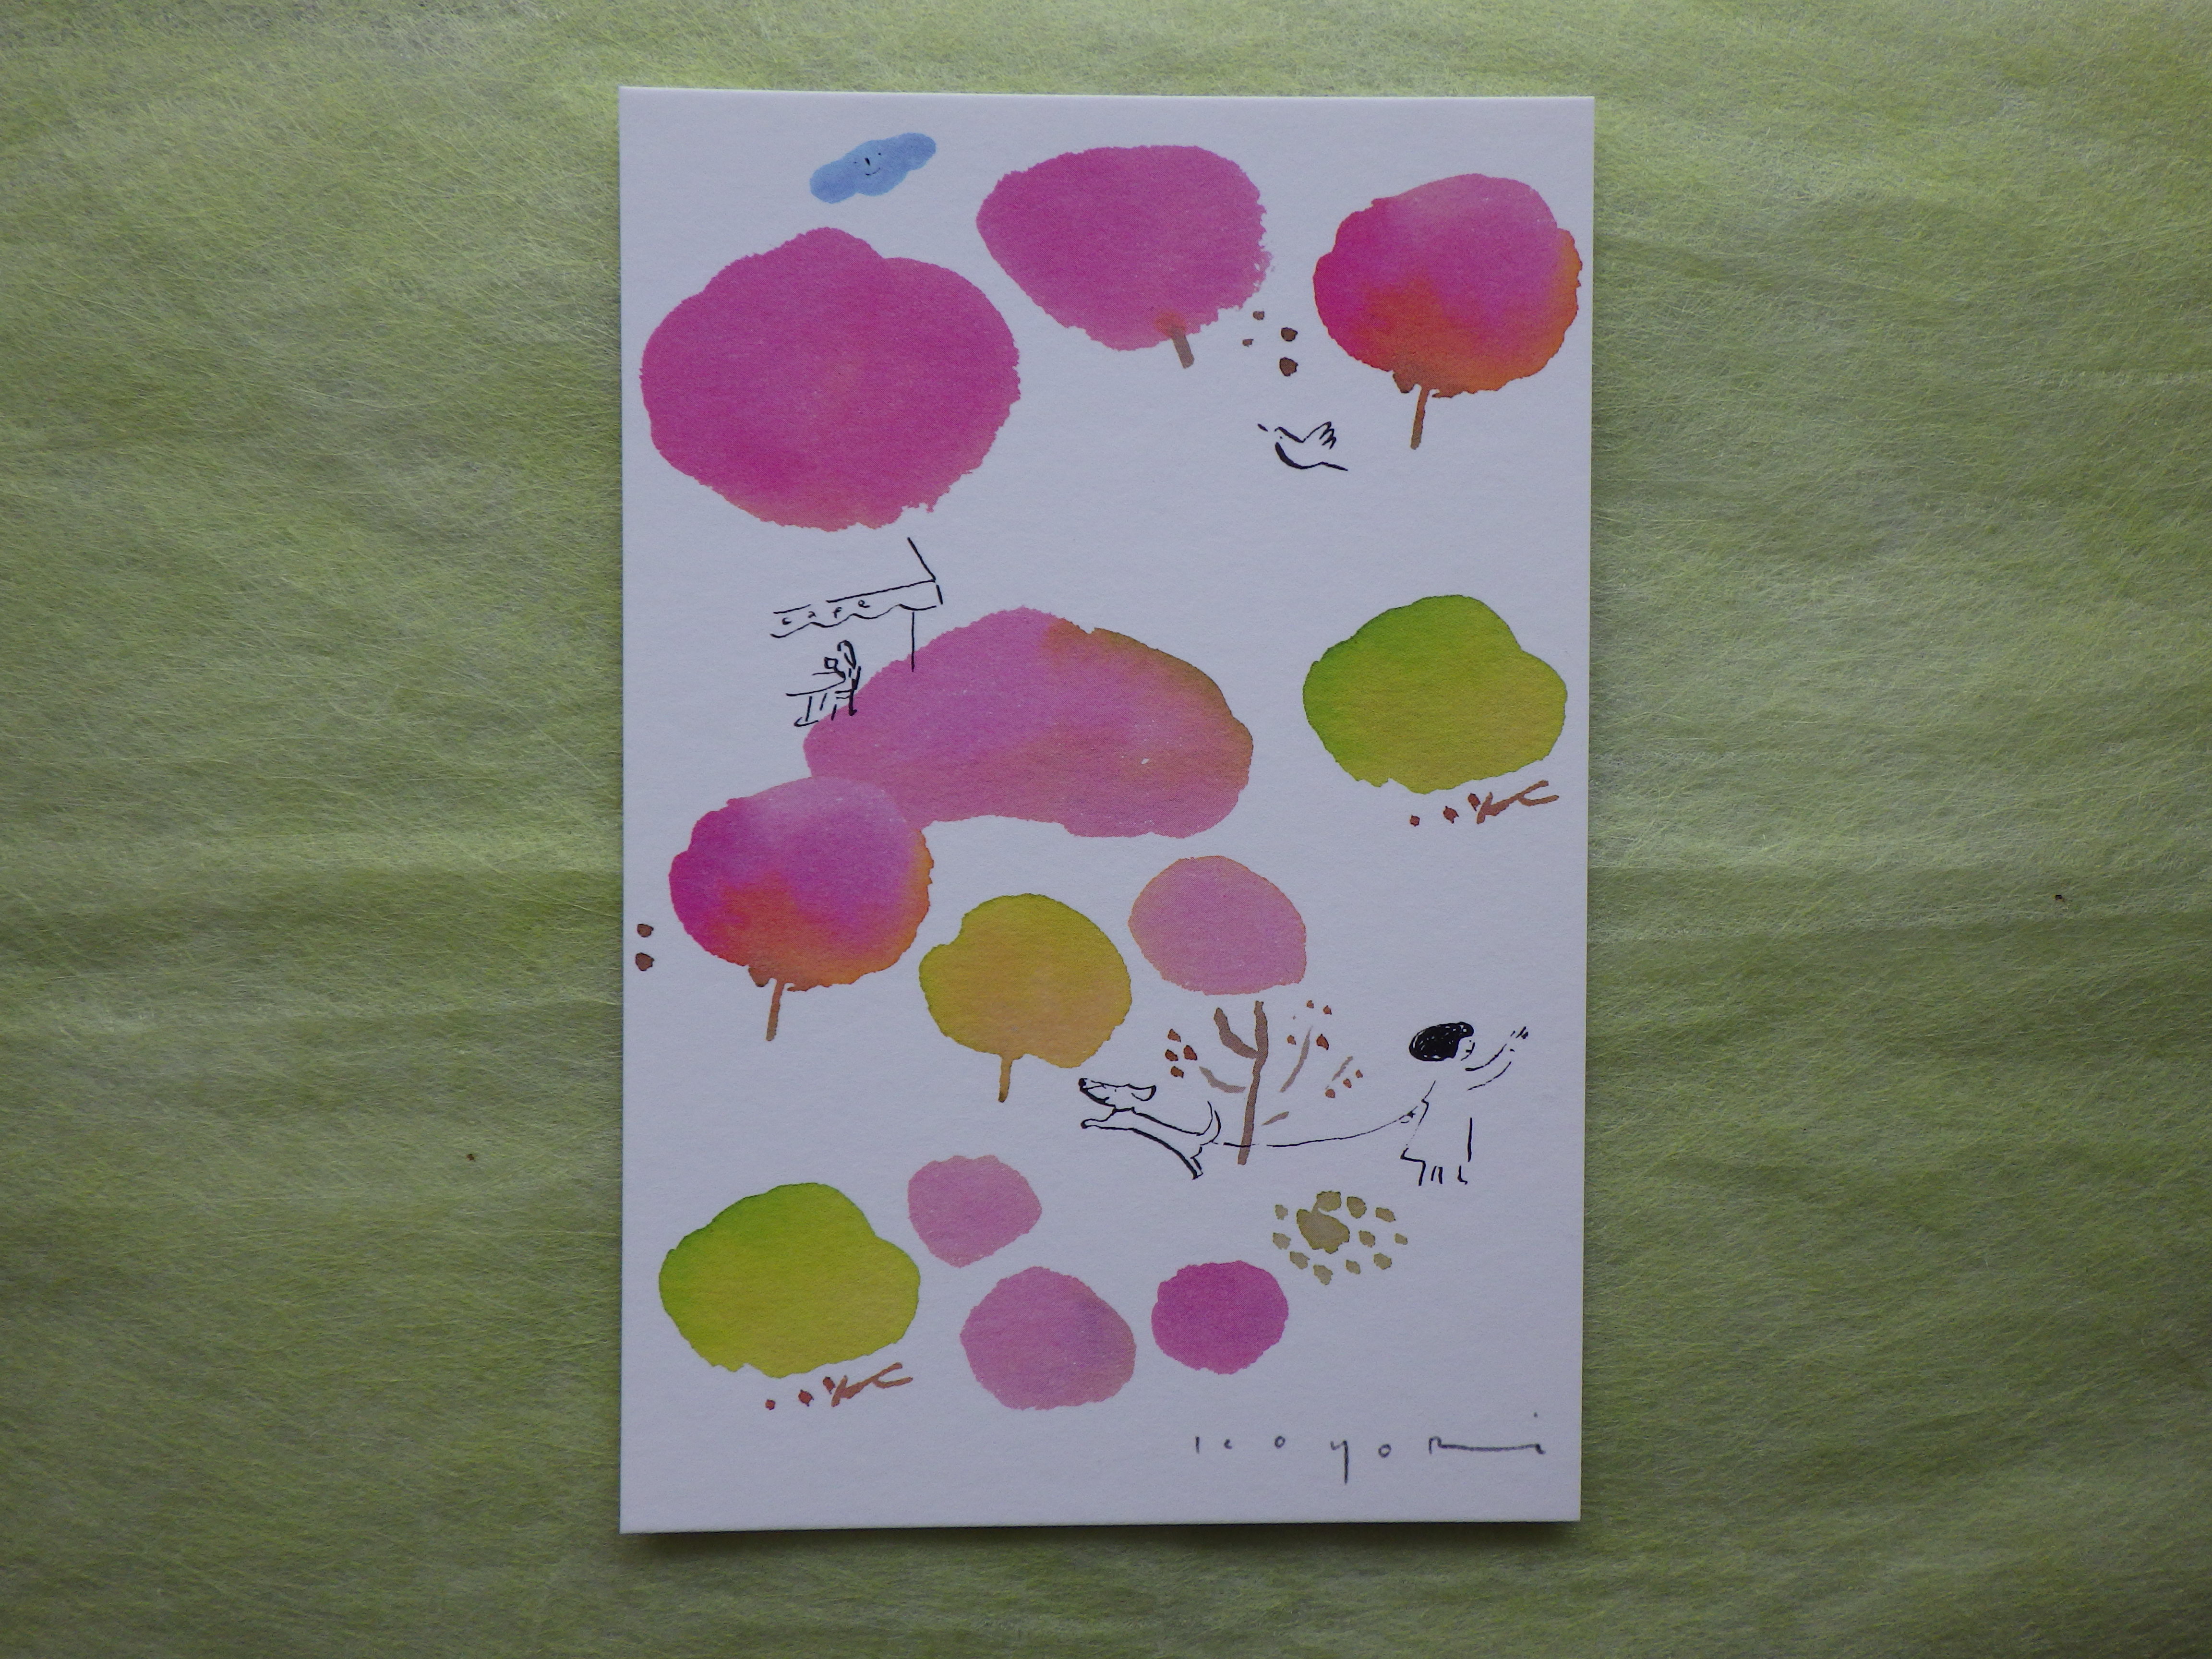 縦型で濃淡のピンクや黄緑色で12本の木を描いた佐々木こよりのポストカード